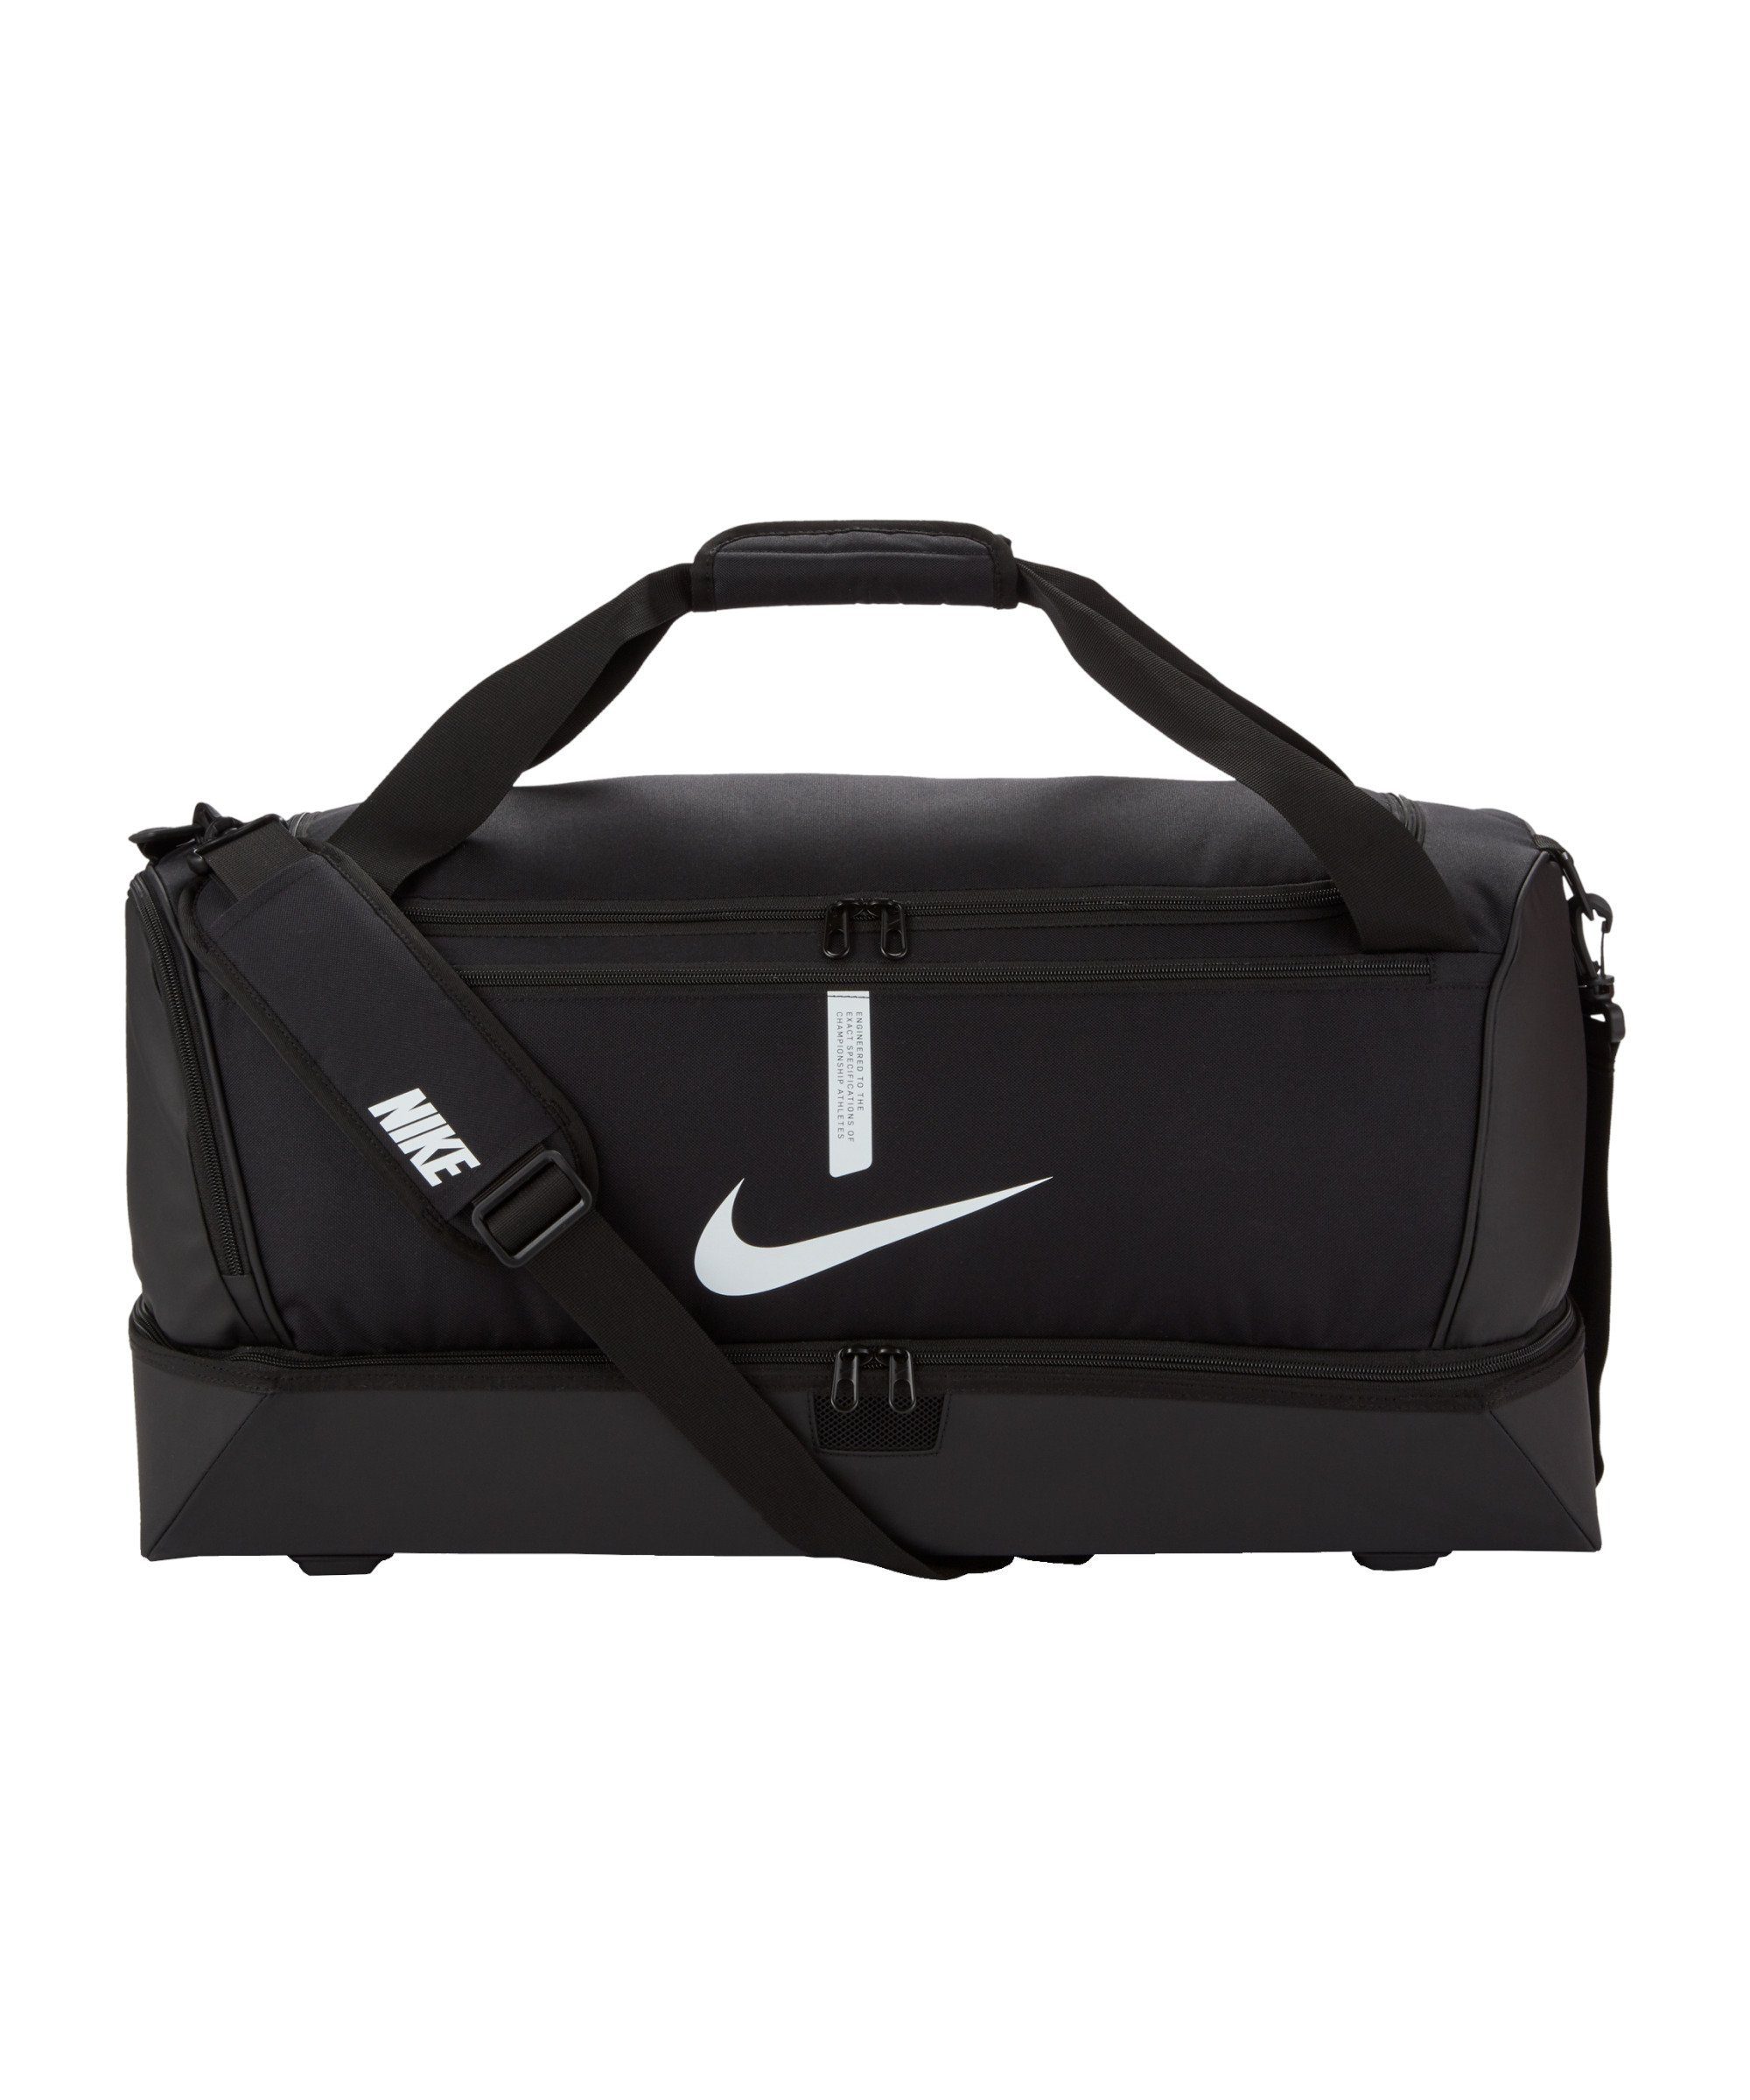 Team Schulter Tasche schwarzweiss Academy Nike Large, Freizeittasche Hardcase